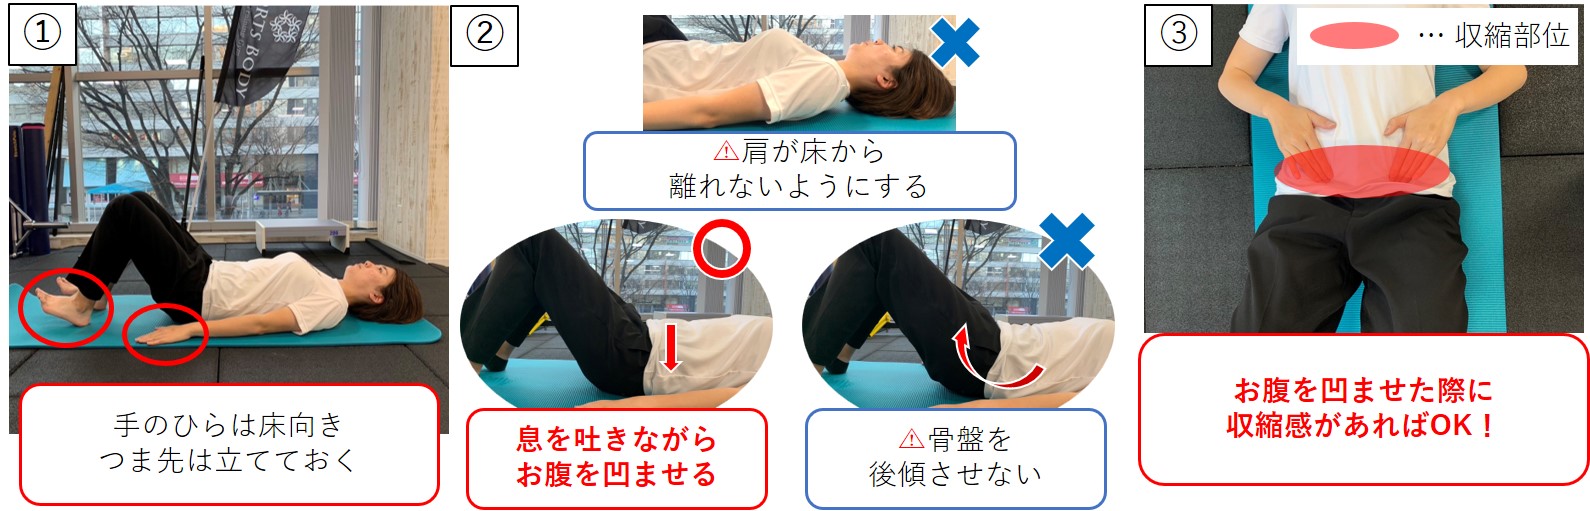 腰痛予防・改善のためのトレーニング